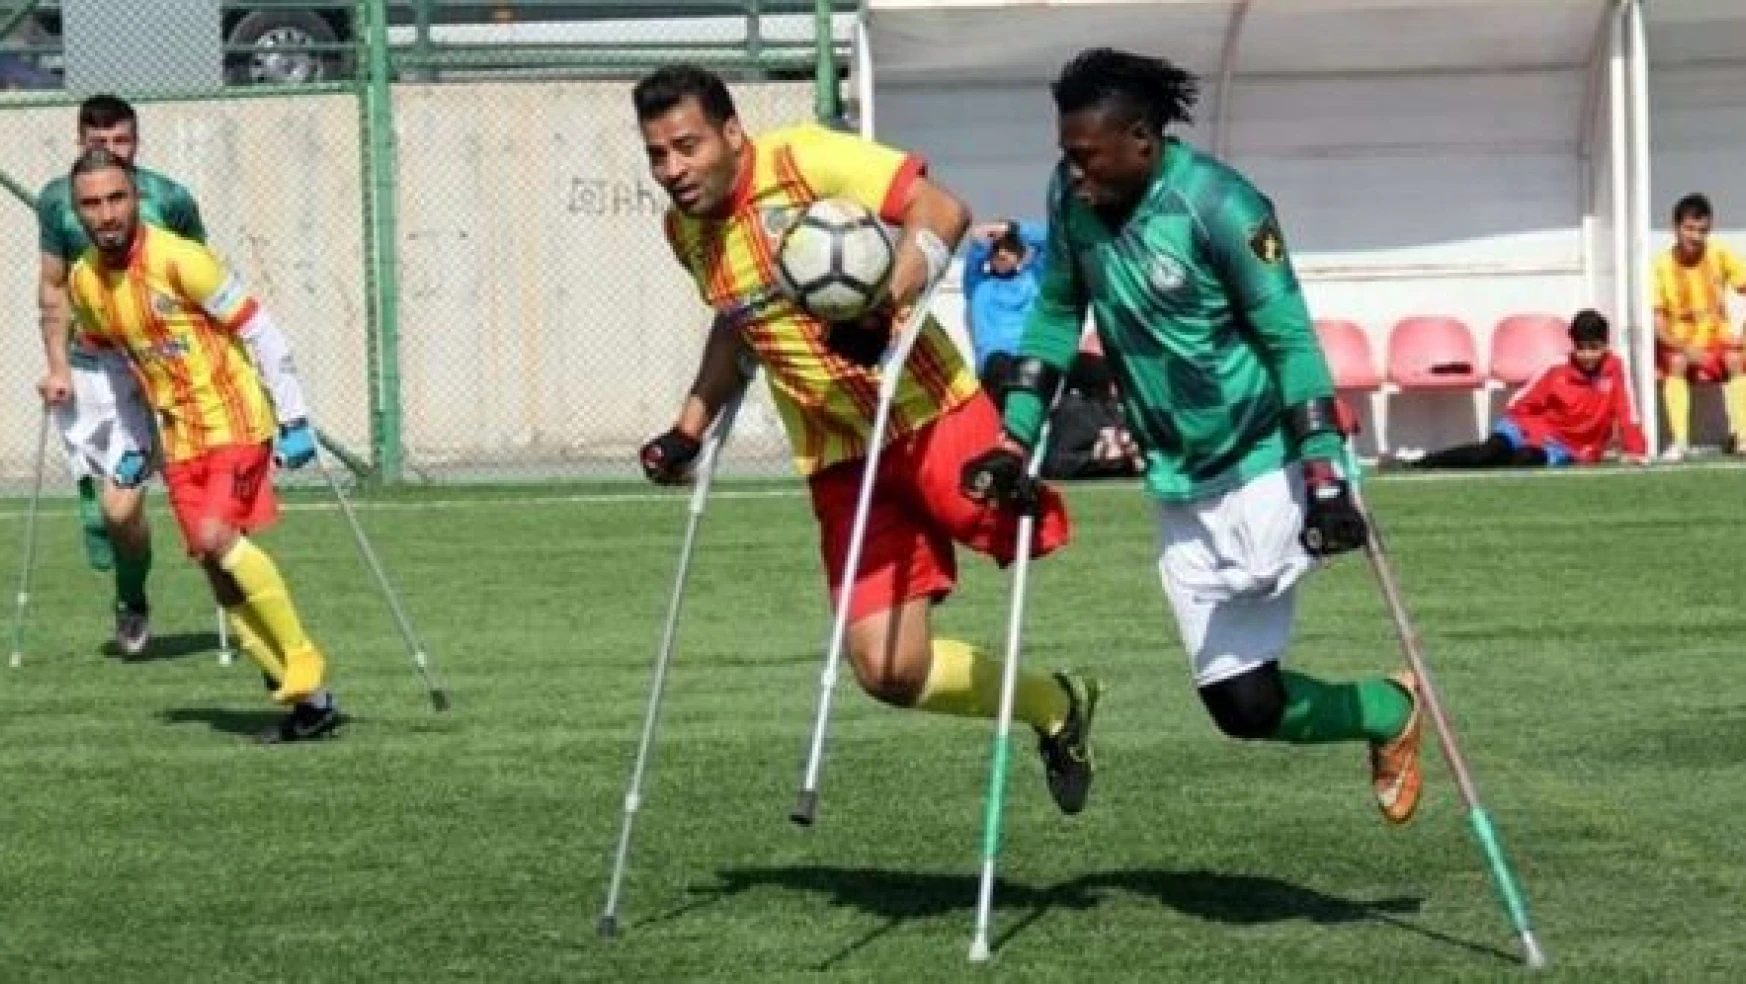 Malatya Büyükşehir Belediyespor 2- 0 Konya Engellilergücü Spor